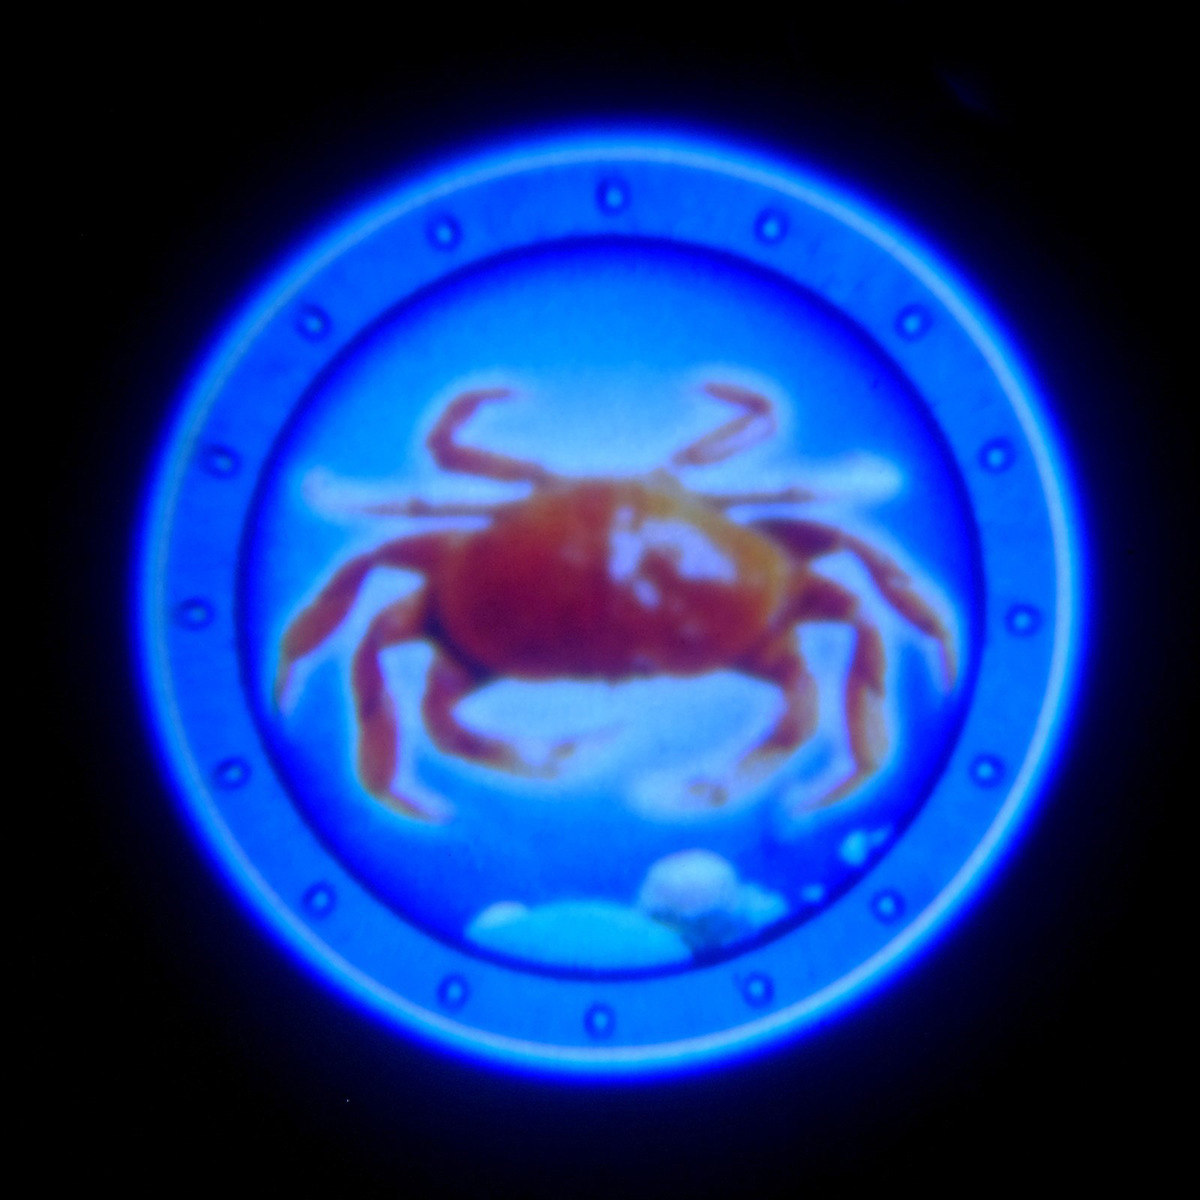 фото Игрушечное оружие Пистолет-проектор Zabiaka Подводный мир, 3243647